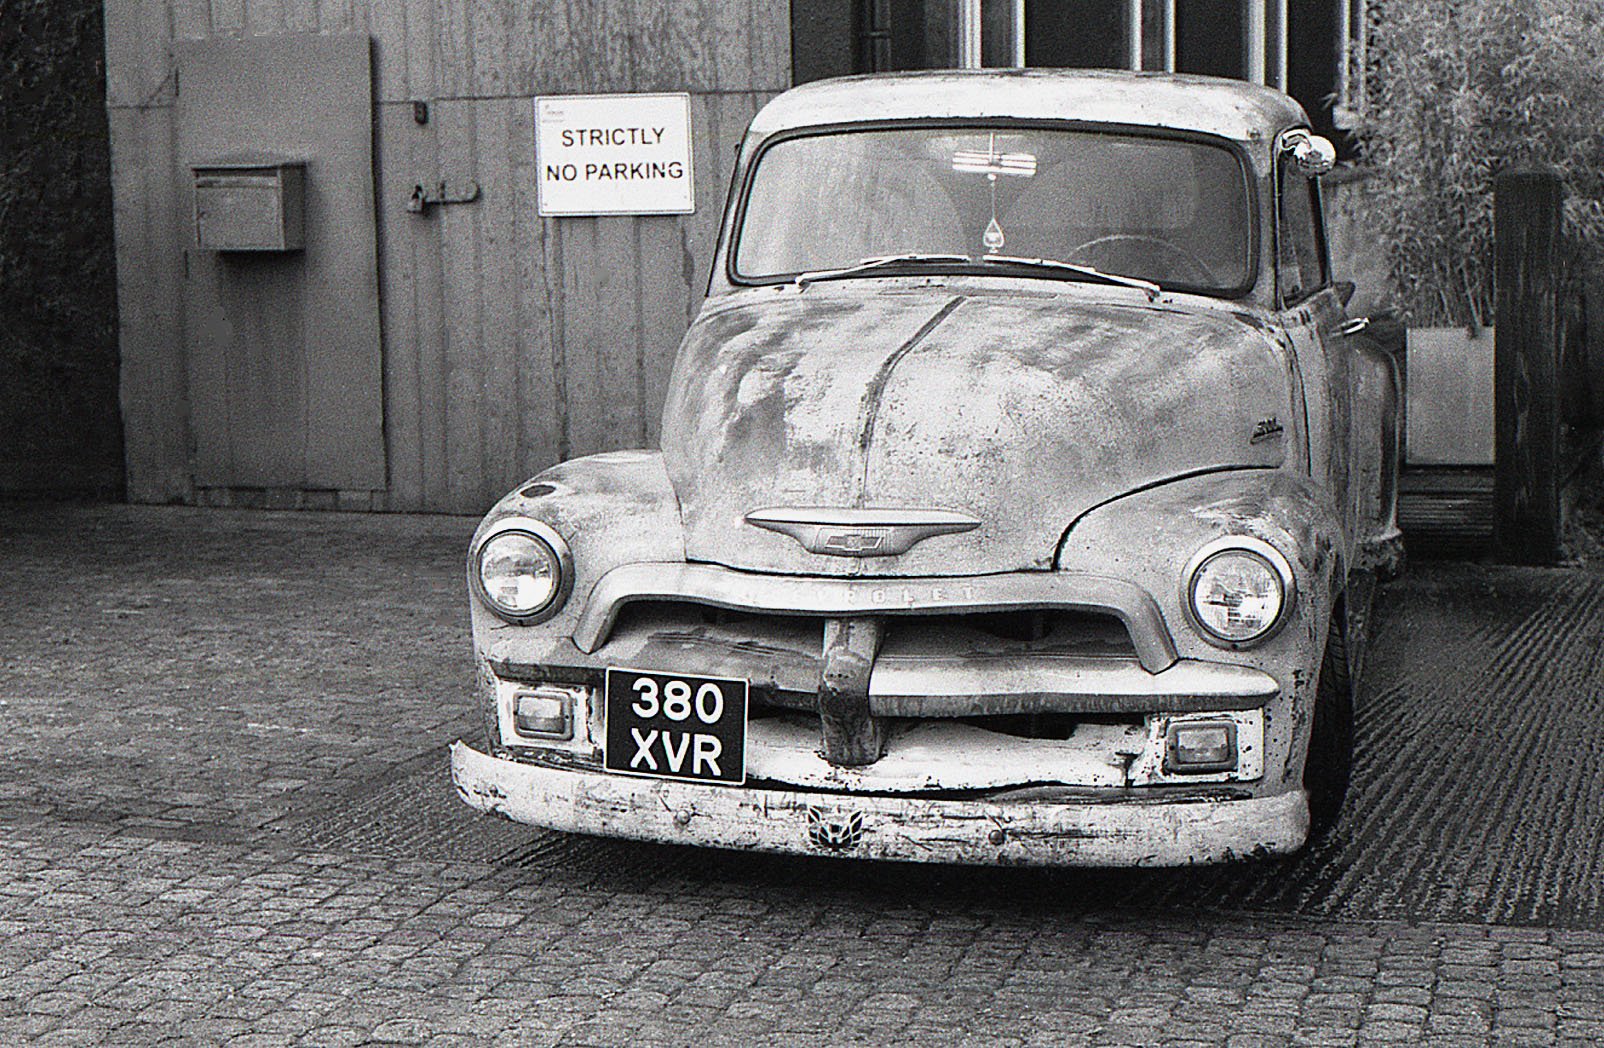  Old Chevrolet in London - UK 